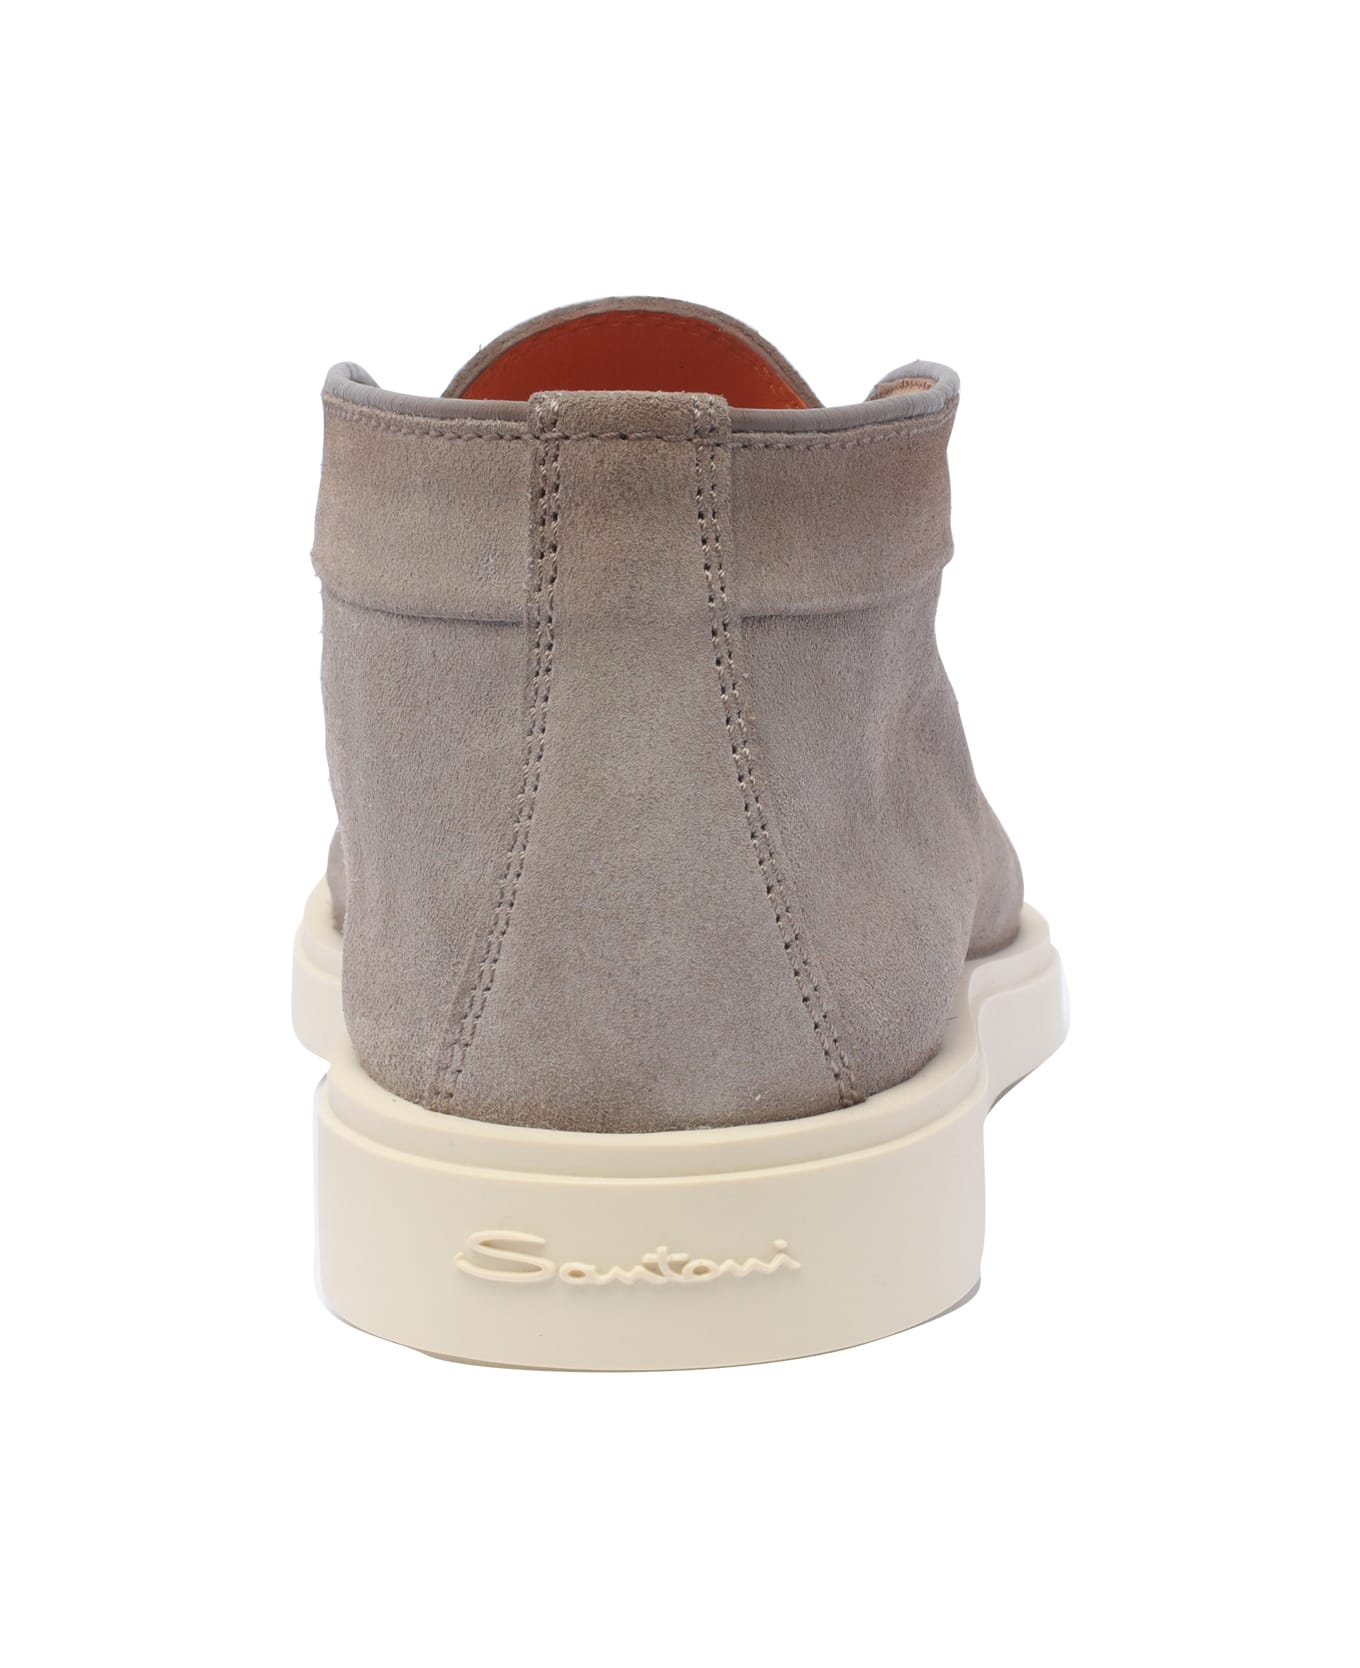 Santoni Lace Up Shoes - Brown